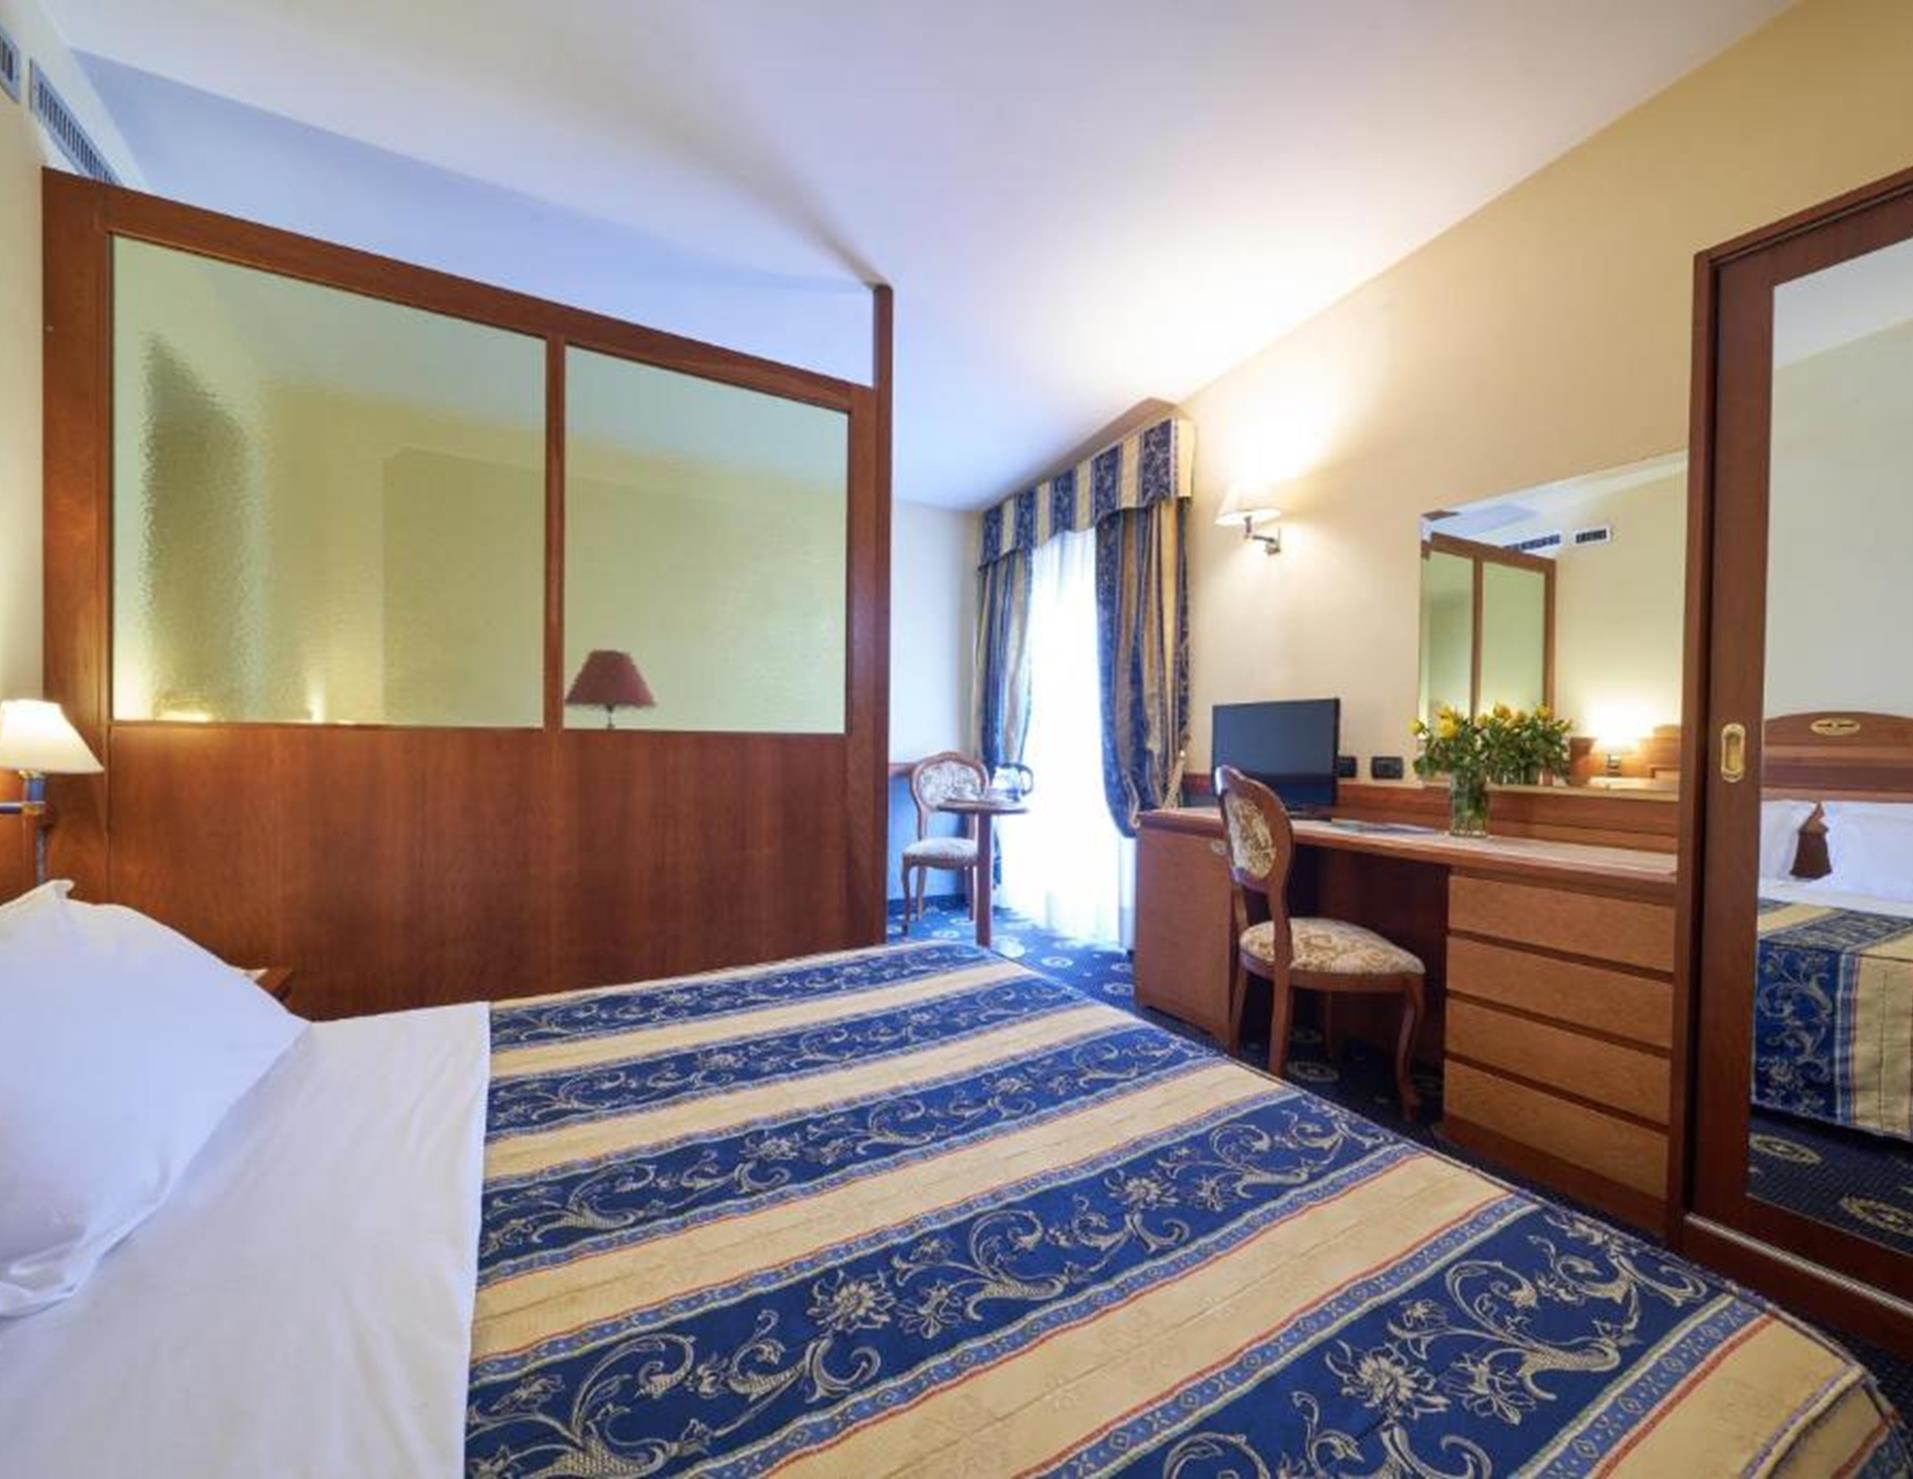 Hotel Ristorante La Piana - Room 5